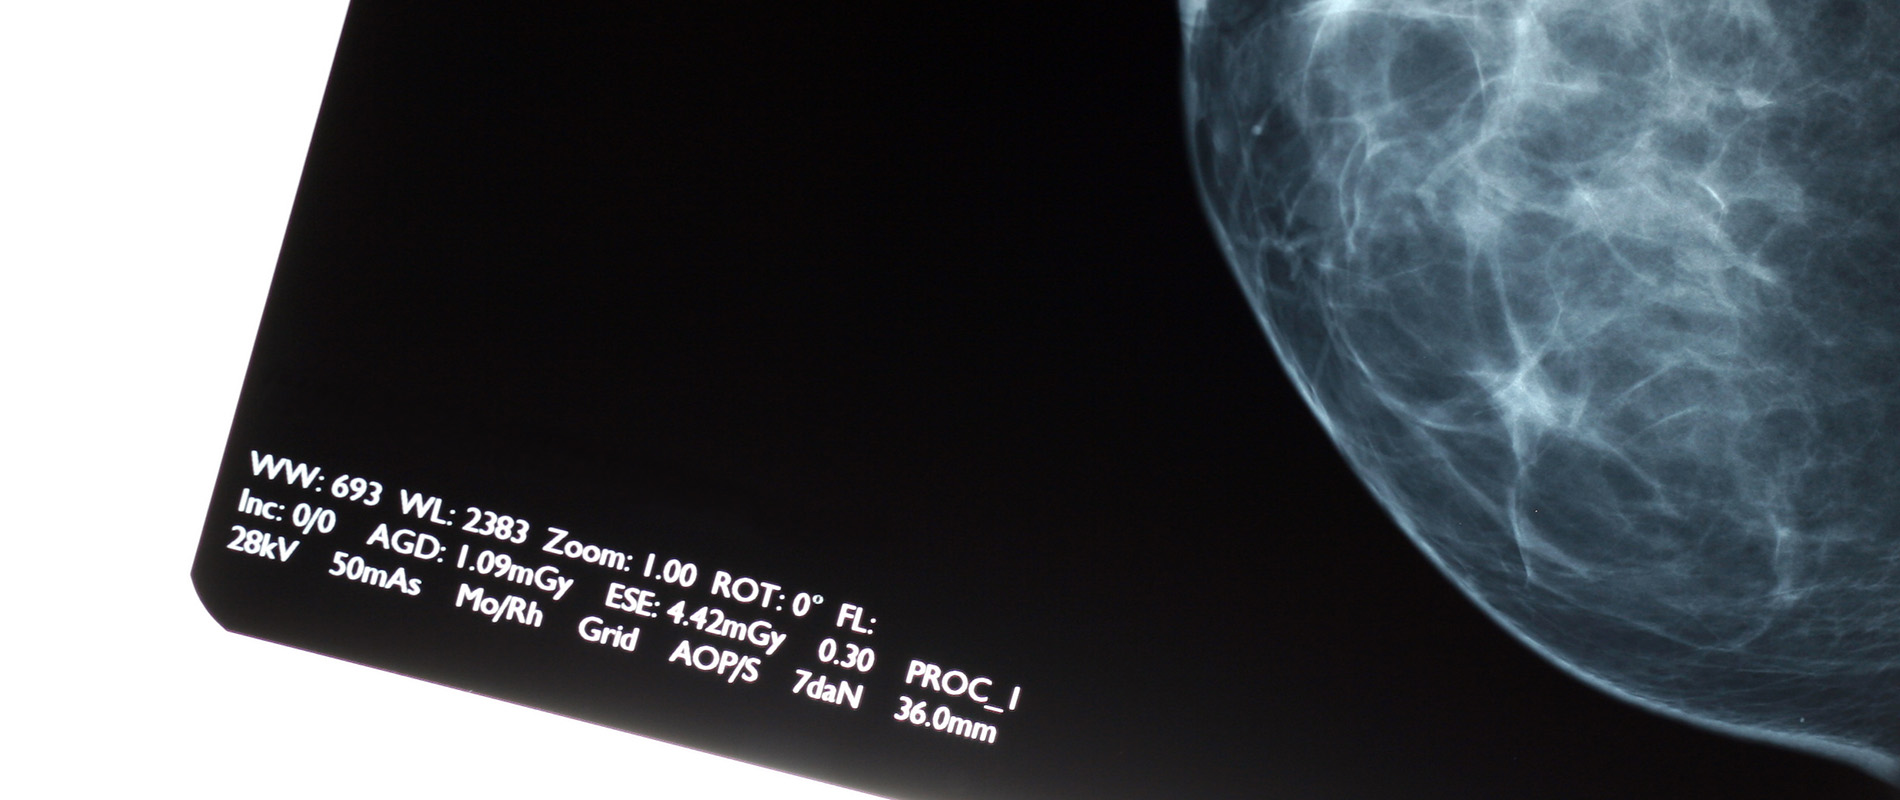 RTI x-ray Modality Mammography